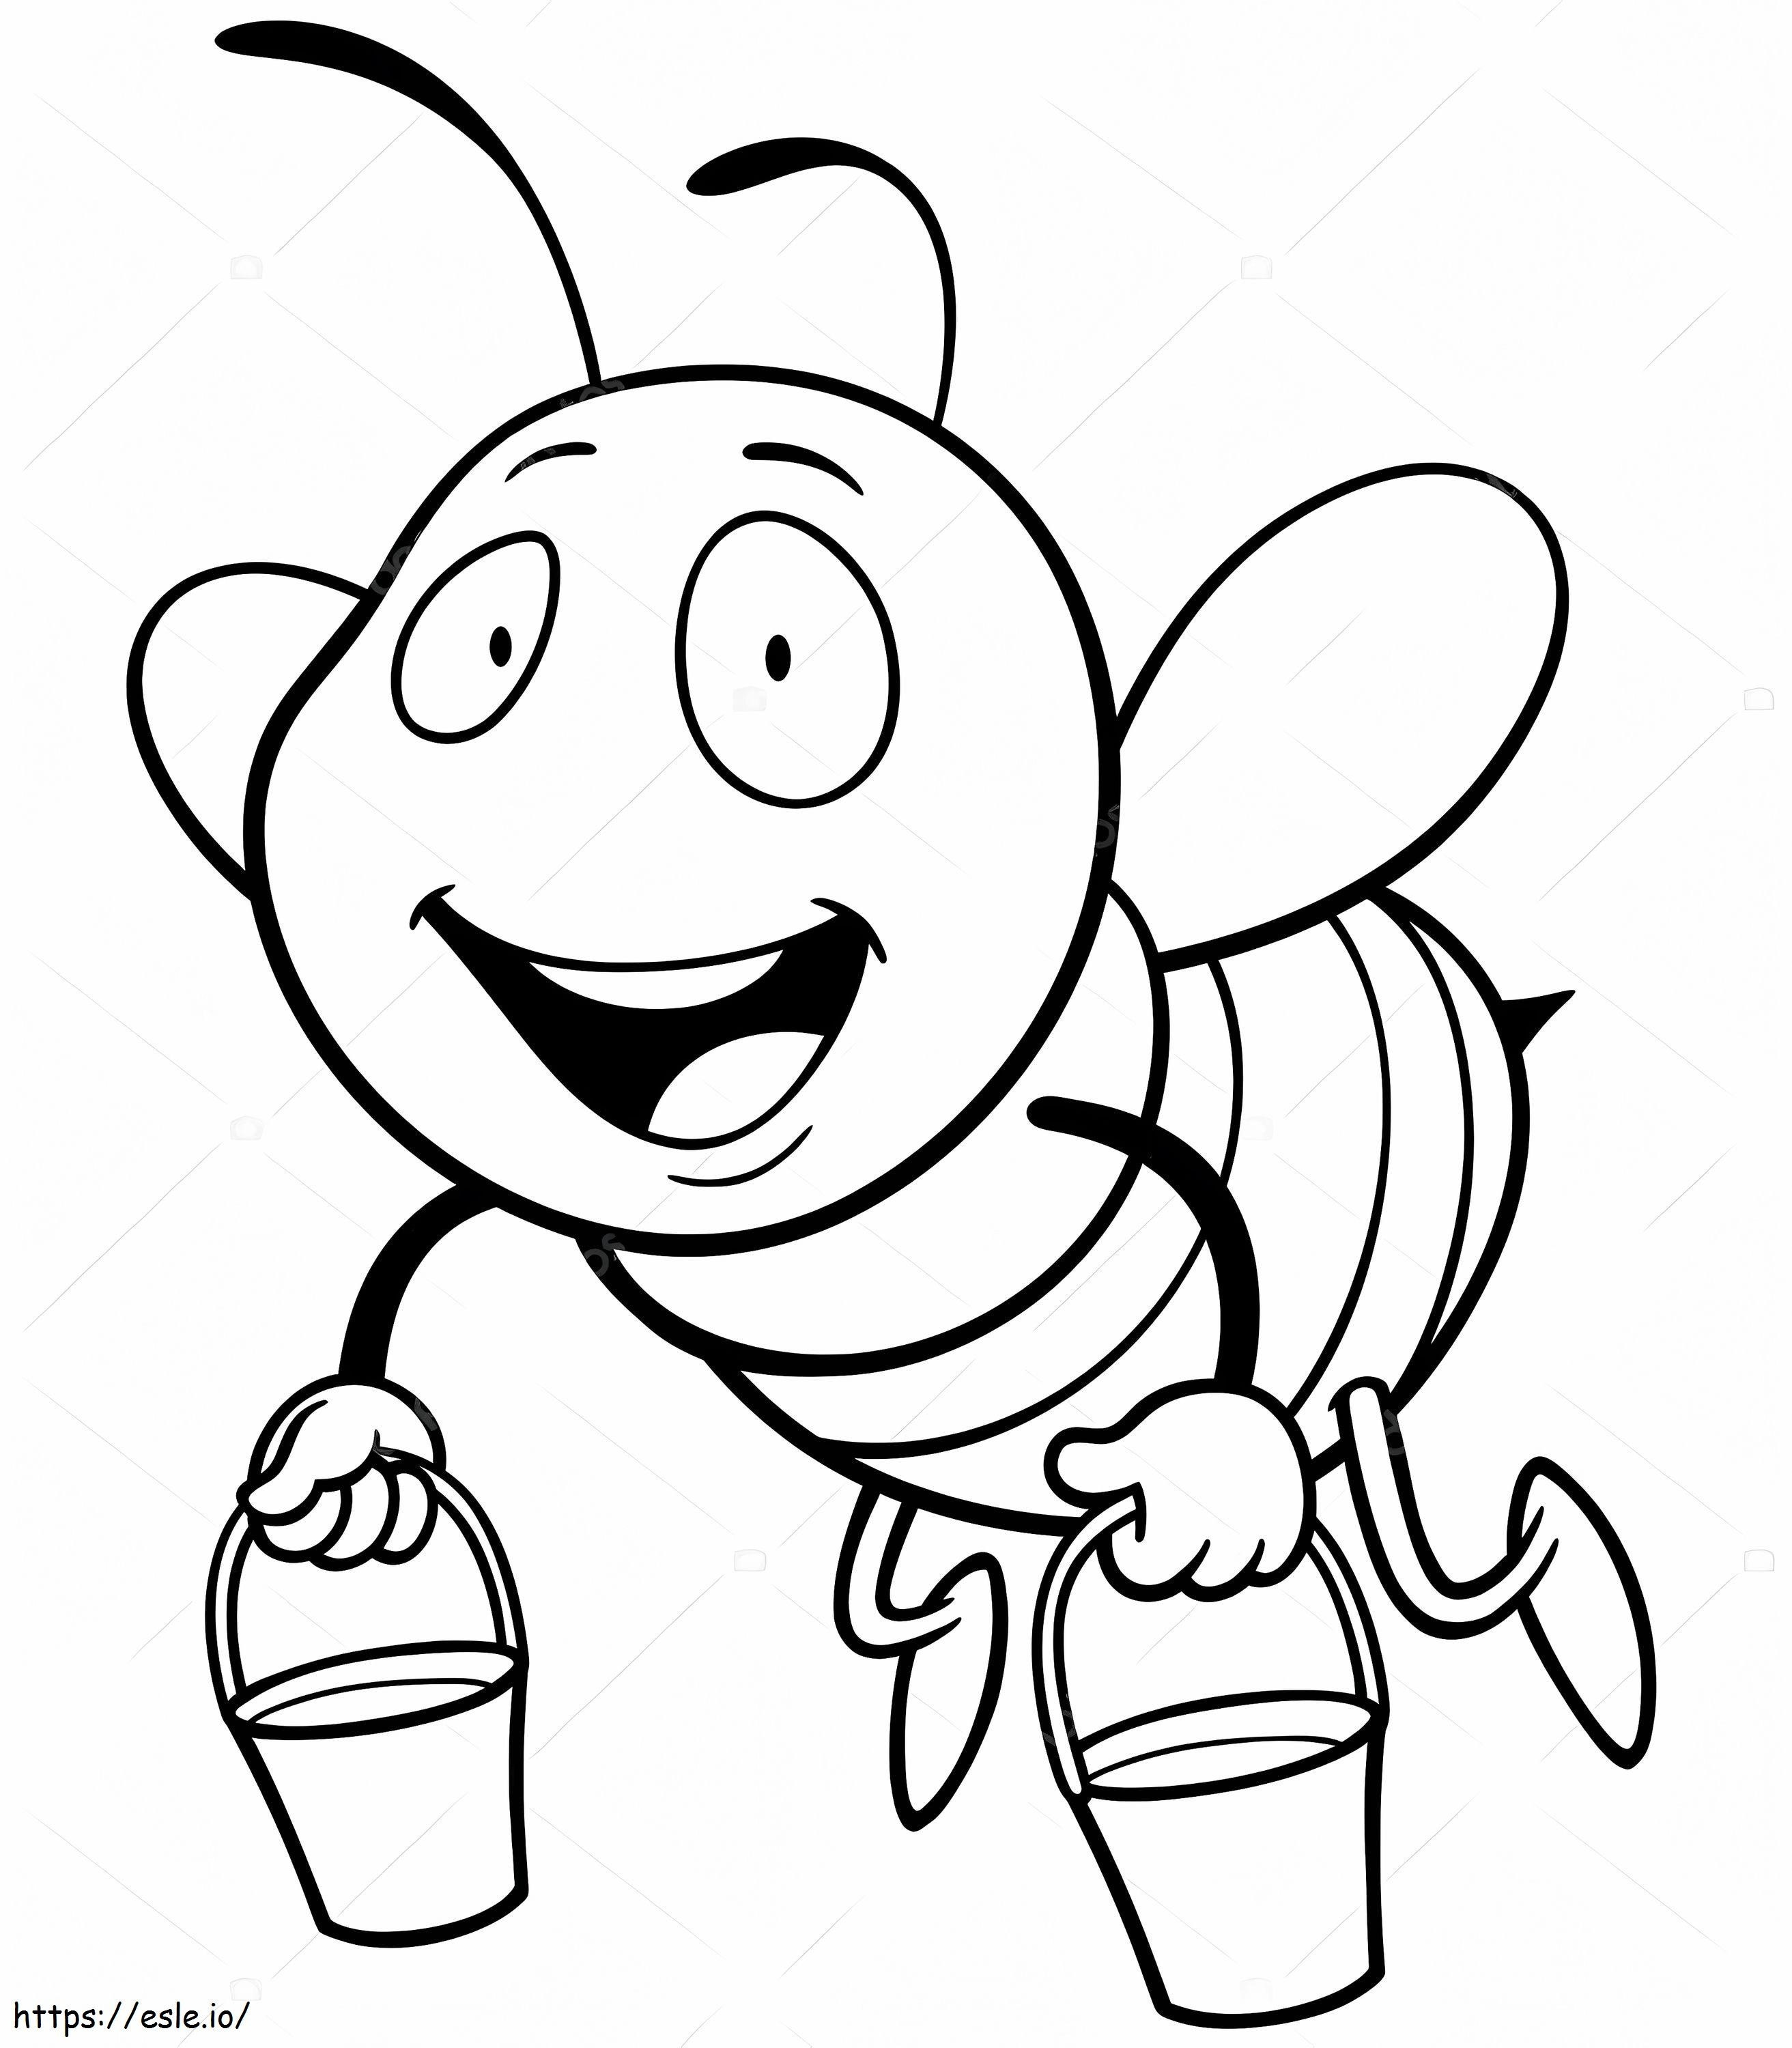 _Depositphotos_78908214 Stock illusztráció Cartoon Bee kifestő